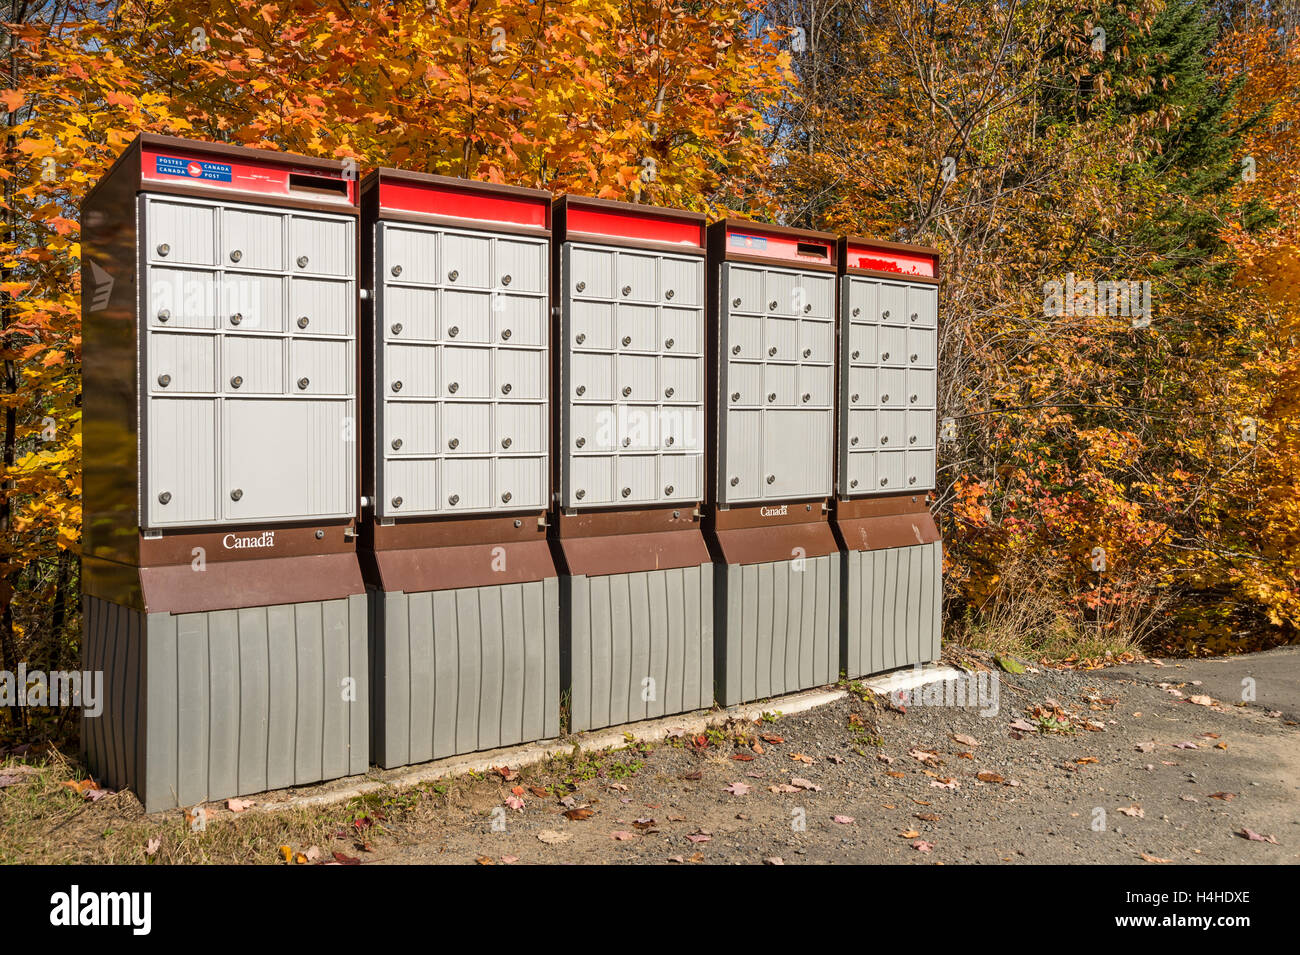 Les boîtes aux lettres de Postes Canada rural Dans Laurentides, Qc, Canada, à l'automne Banque D'Images